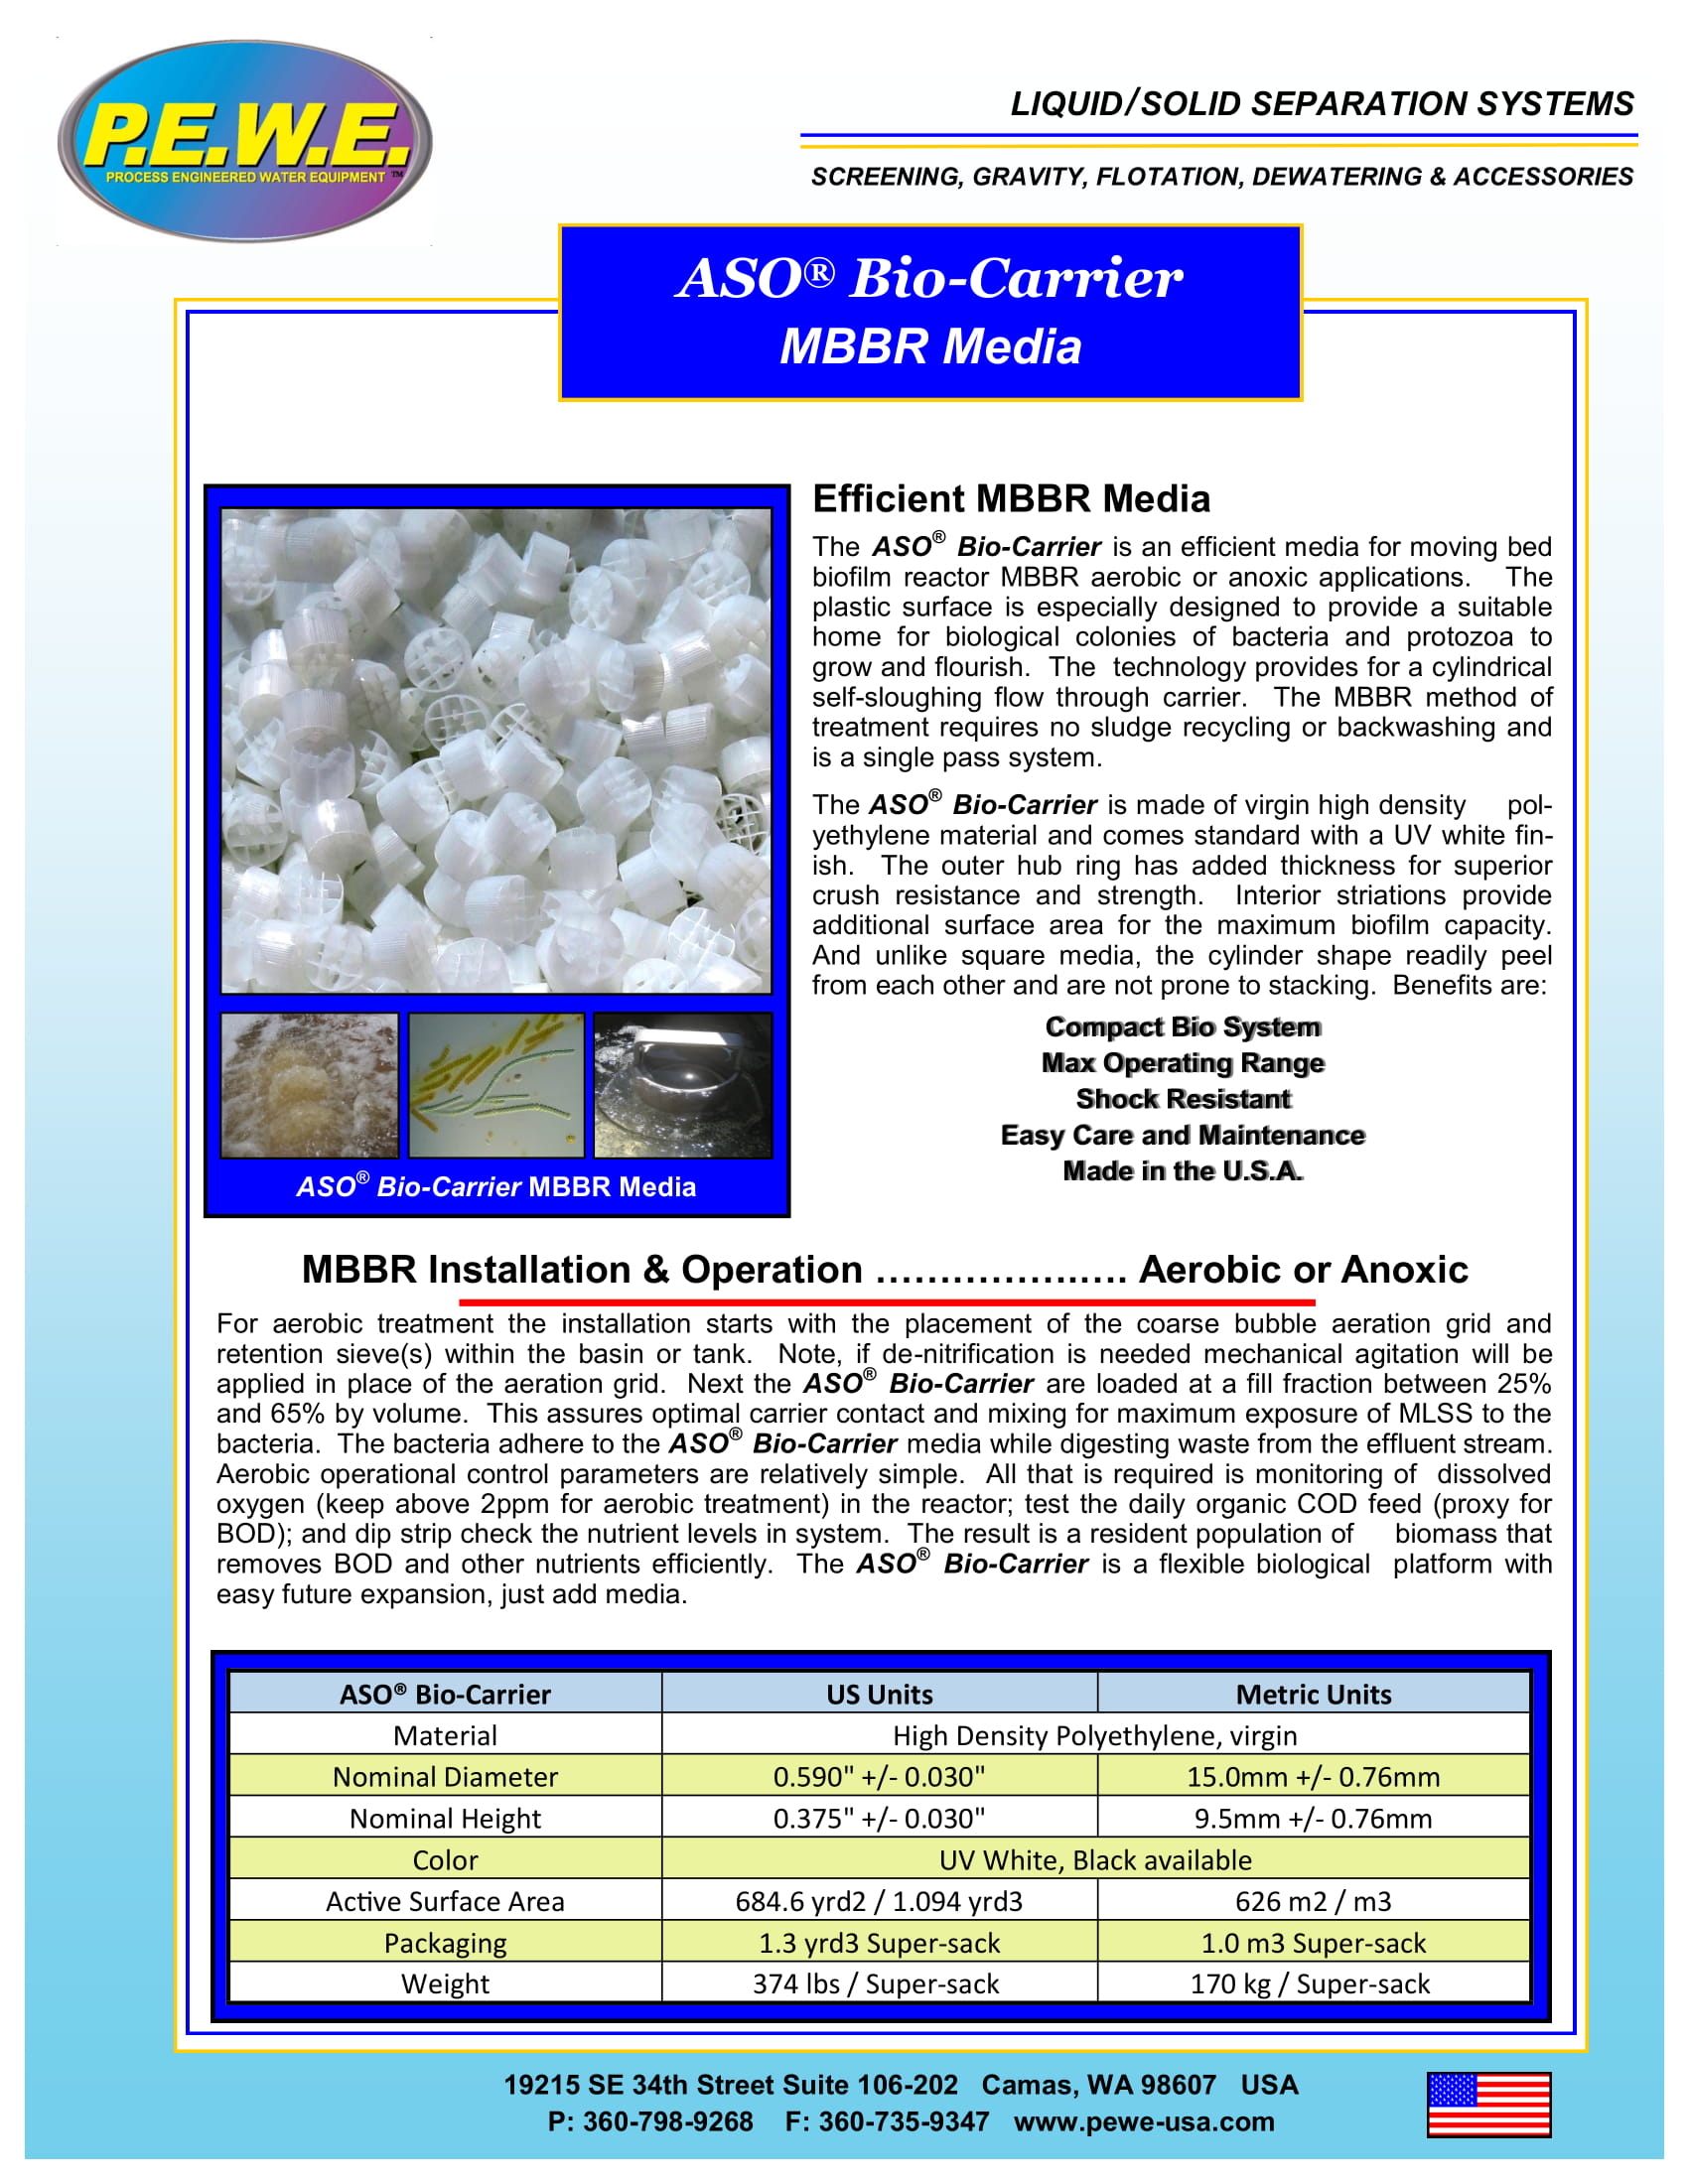 PEWE-ASO-Bio-Carrier-Brochure-052019-1.jpg